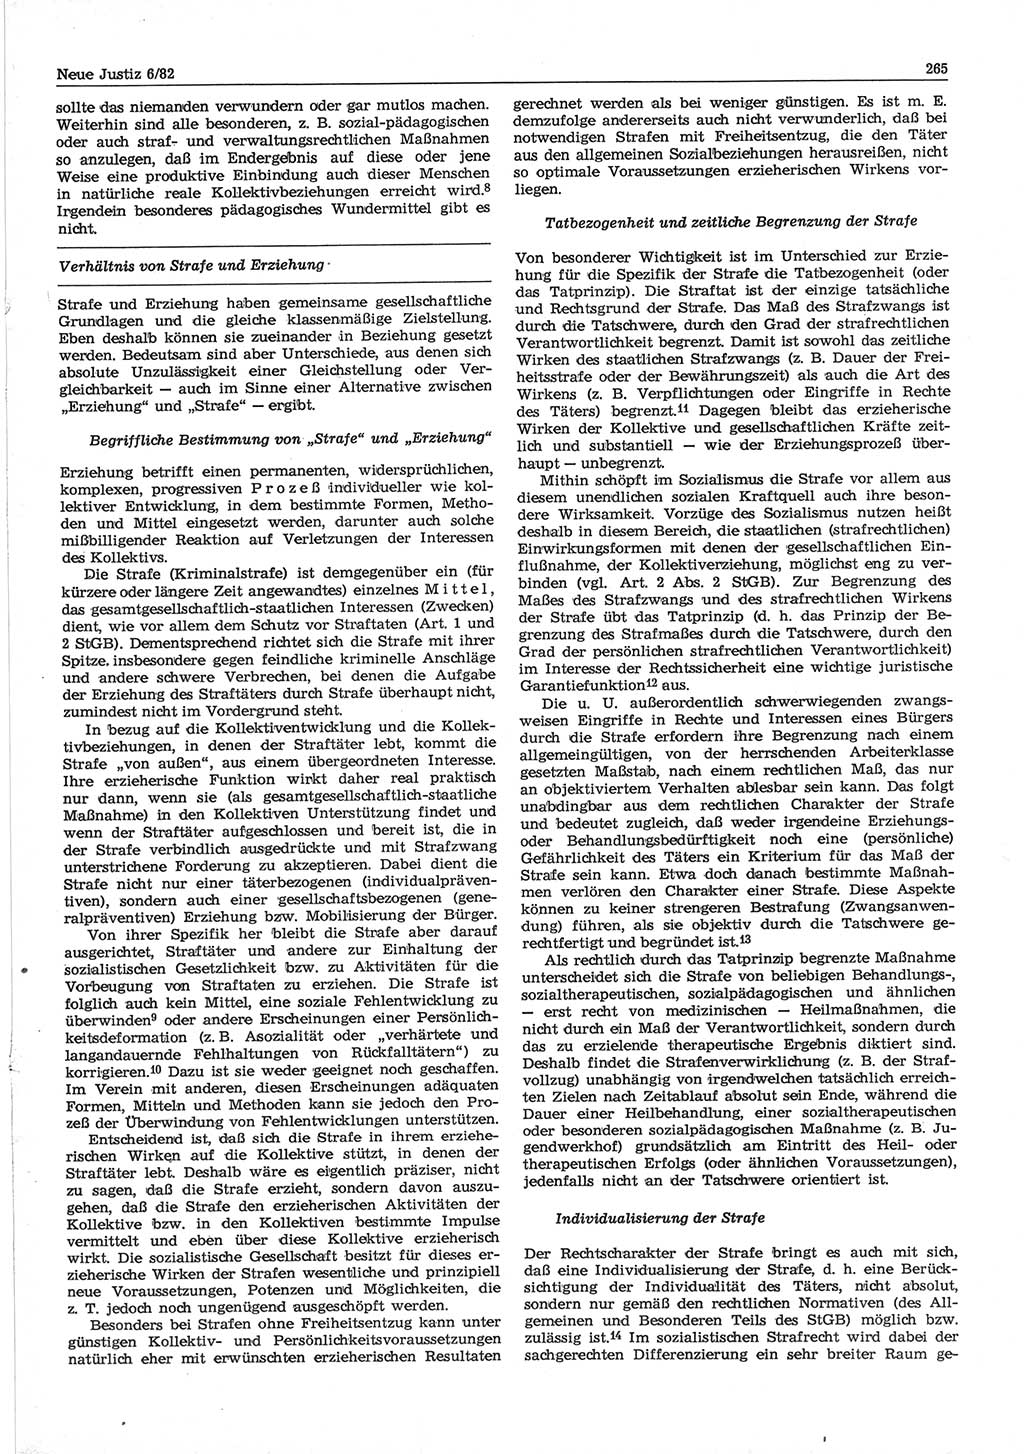 Neue Justiz (NJ), Zeitschrift für sozialistisches Recht und Gesetzlichkeit [Deutsche Demokratische Republik (DDR)], 36. Jahrgang 1982, Seite 265 (NJ DDR 1982, S. 265)